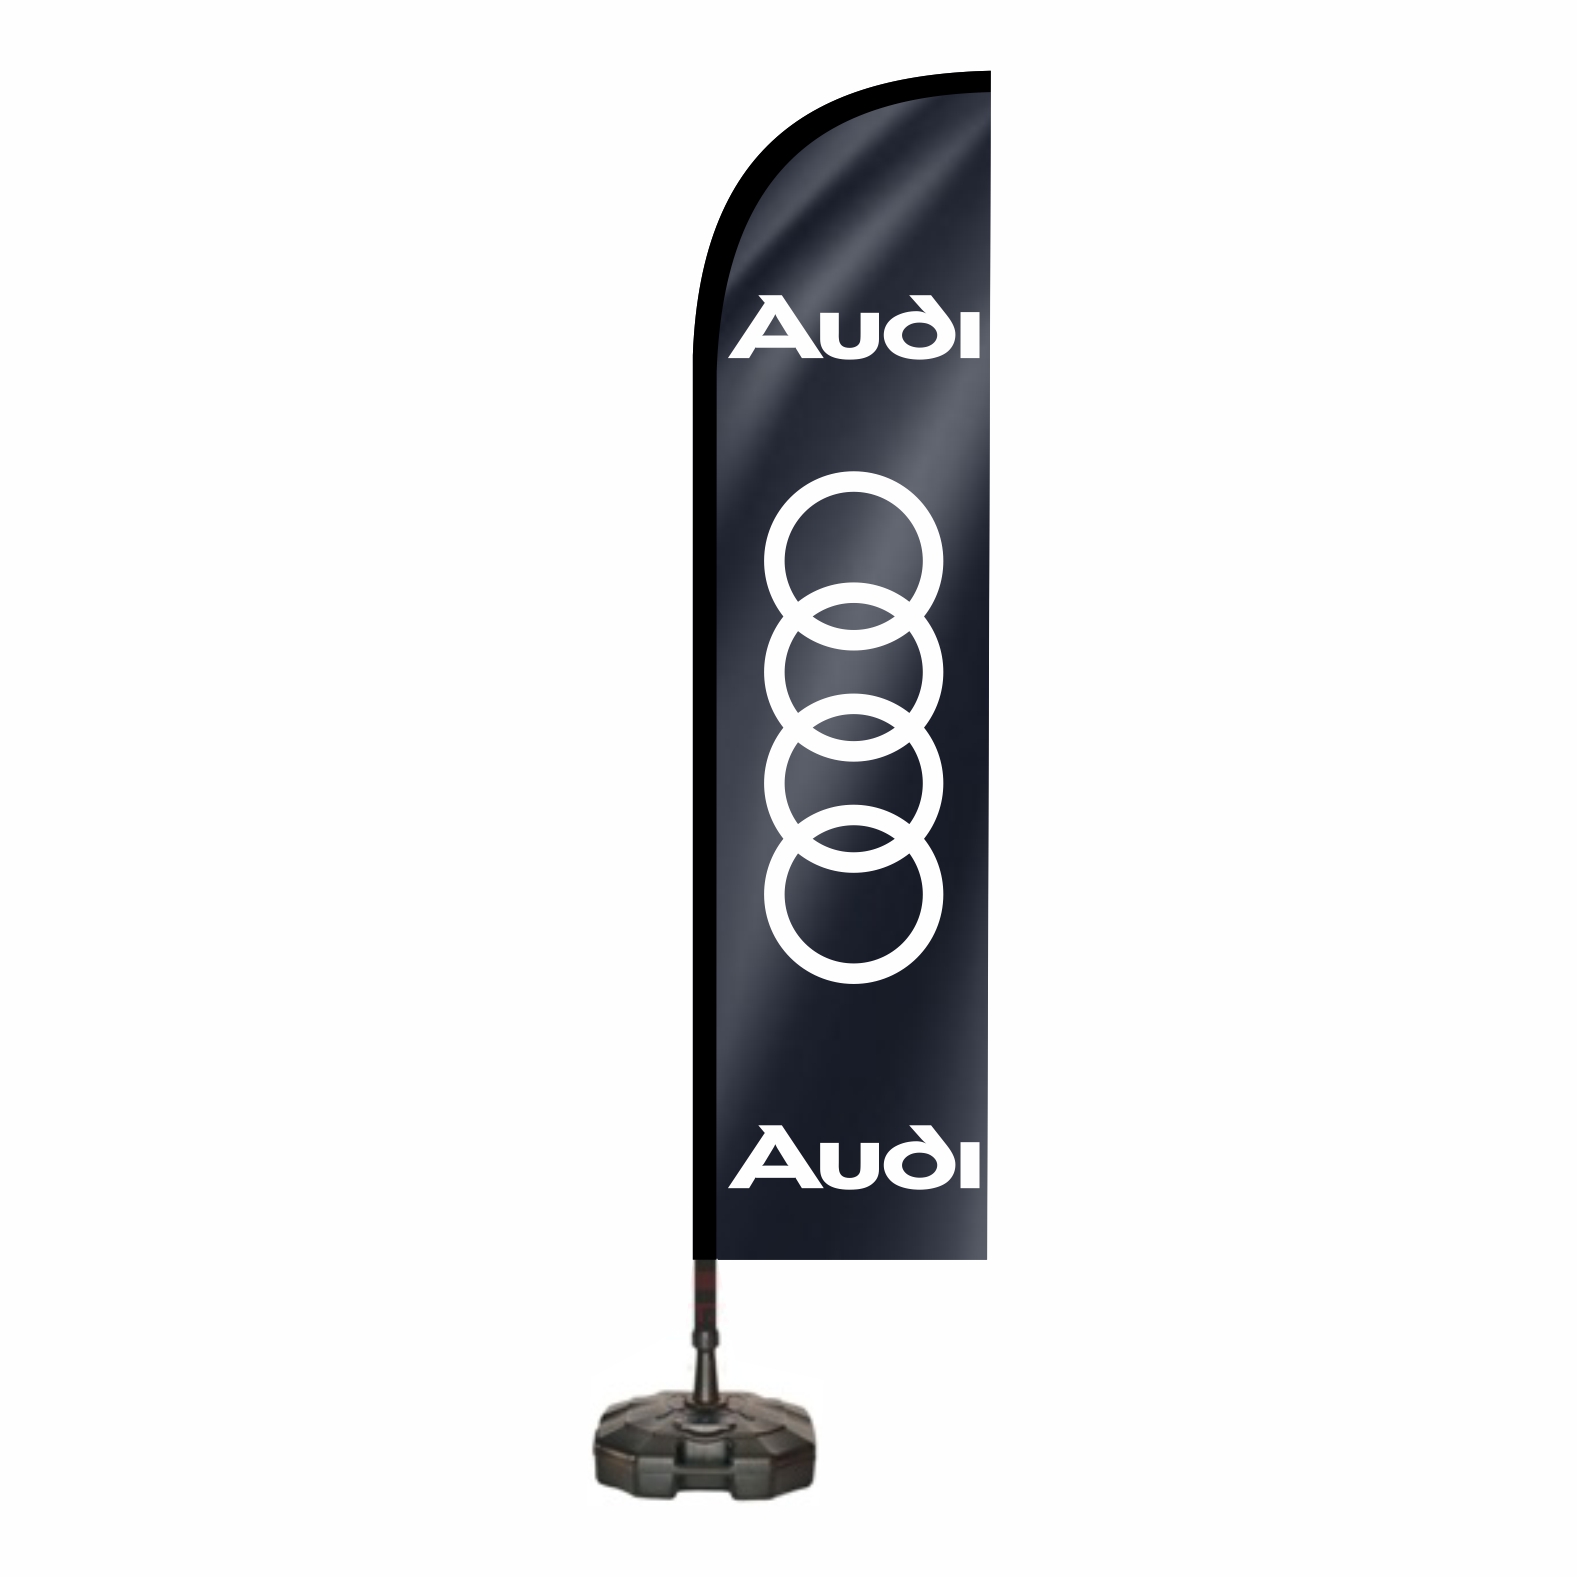 Audi Yol Bayra eitleri